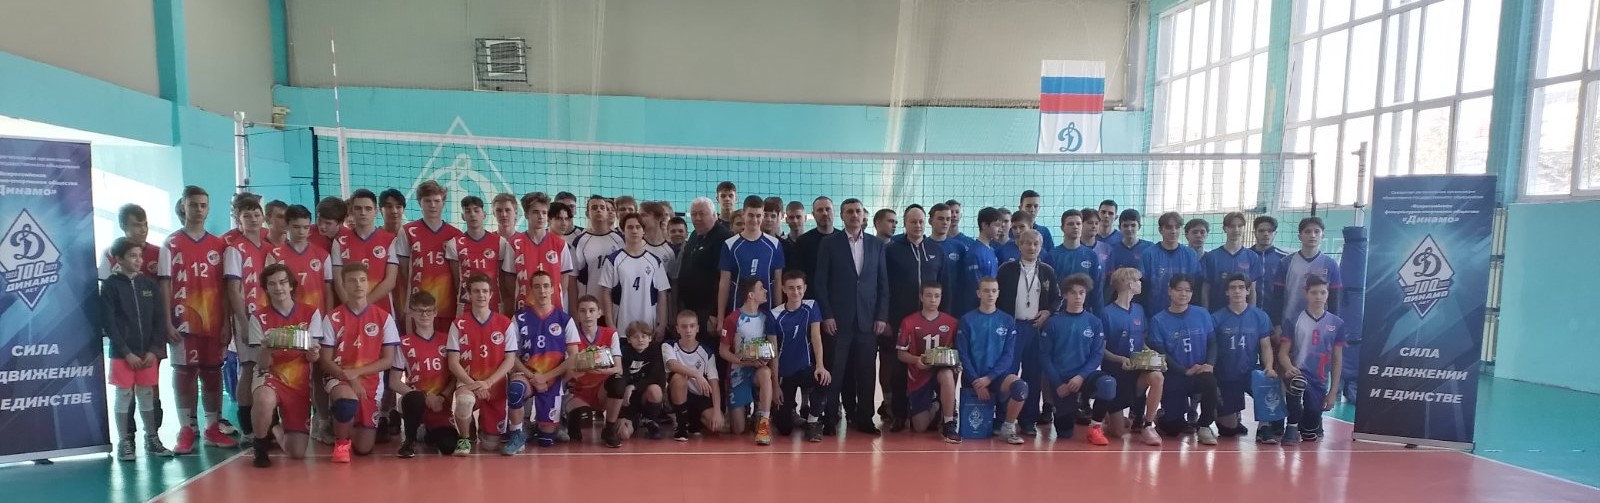 Турнир по волейболу среди юношей, посвященный 100-летию Общества «Динамо»